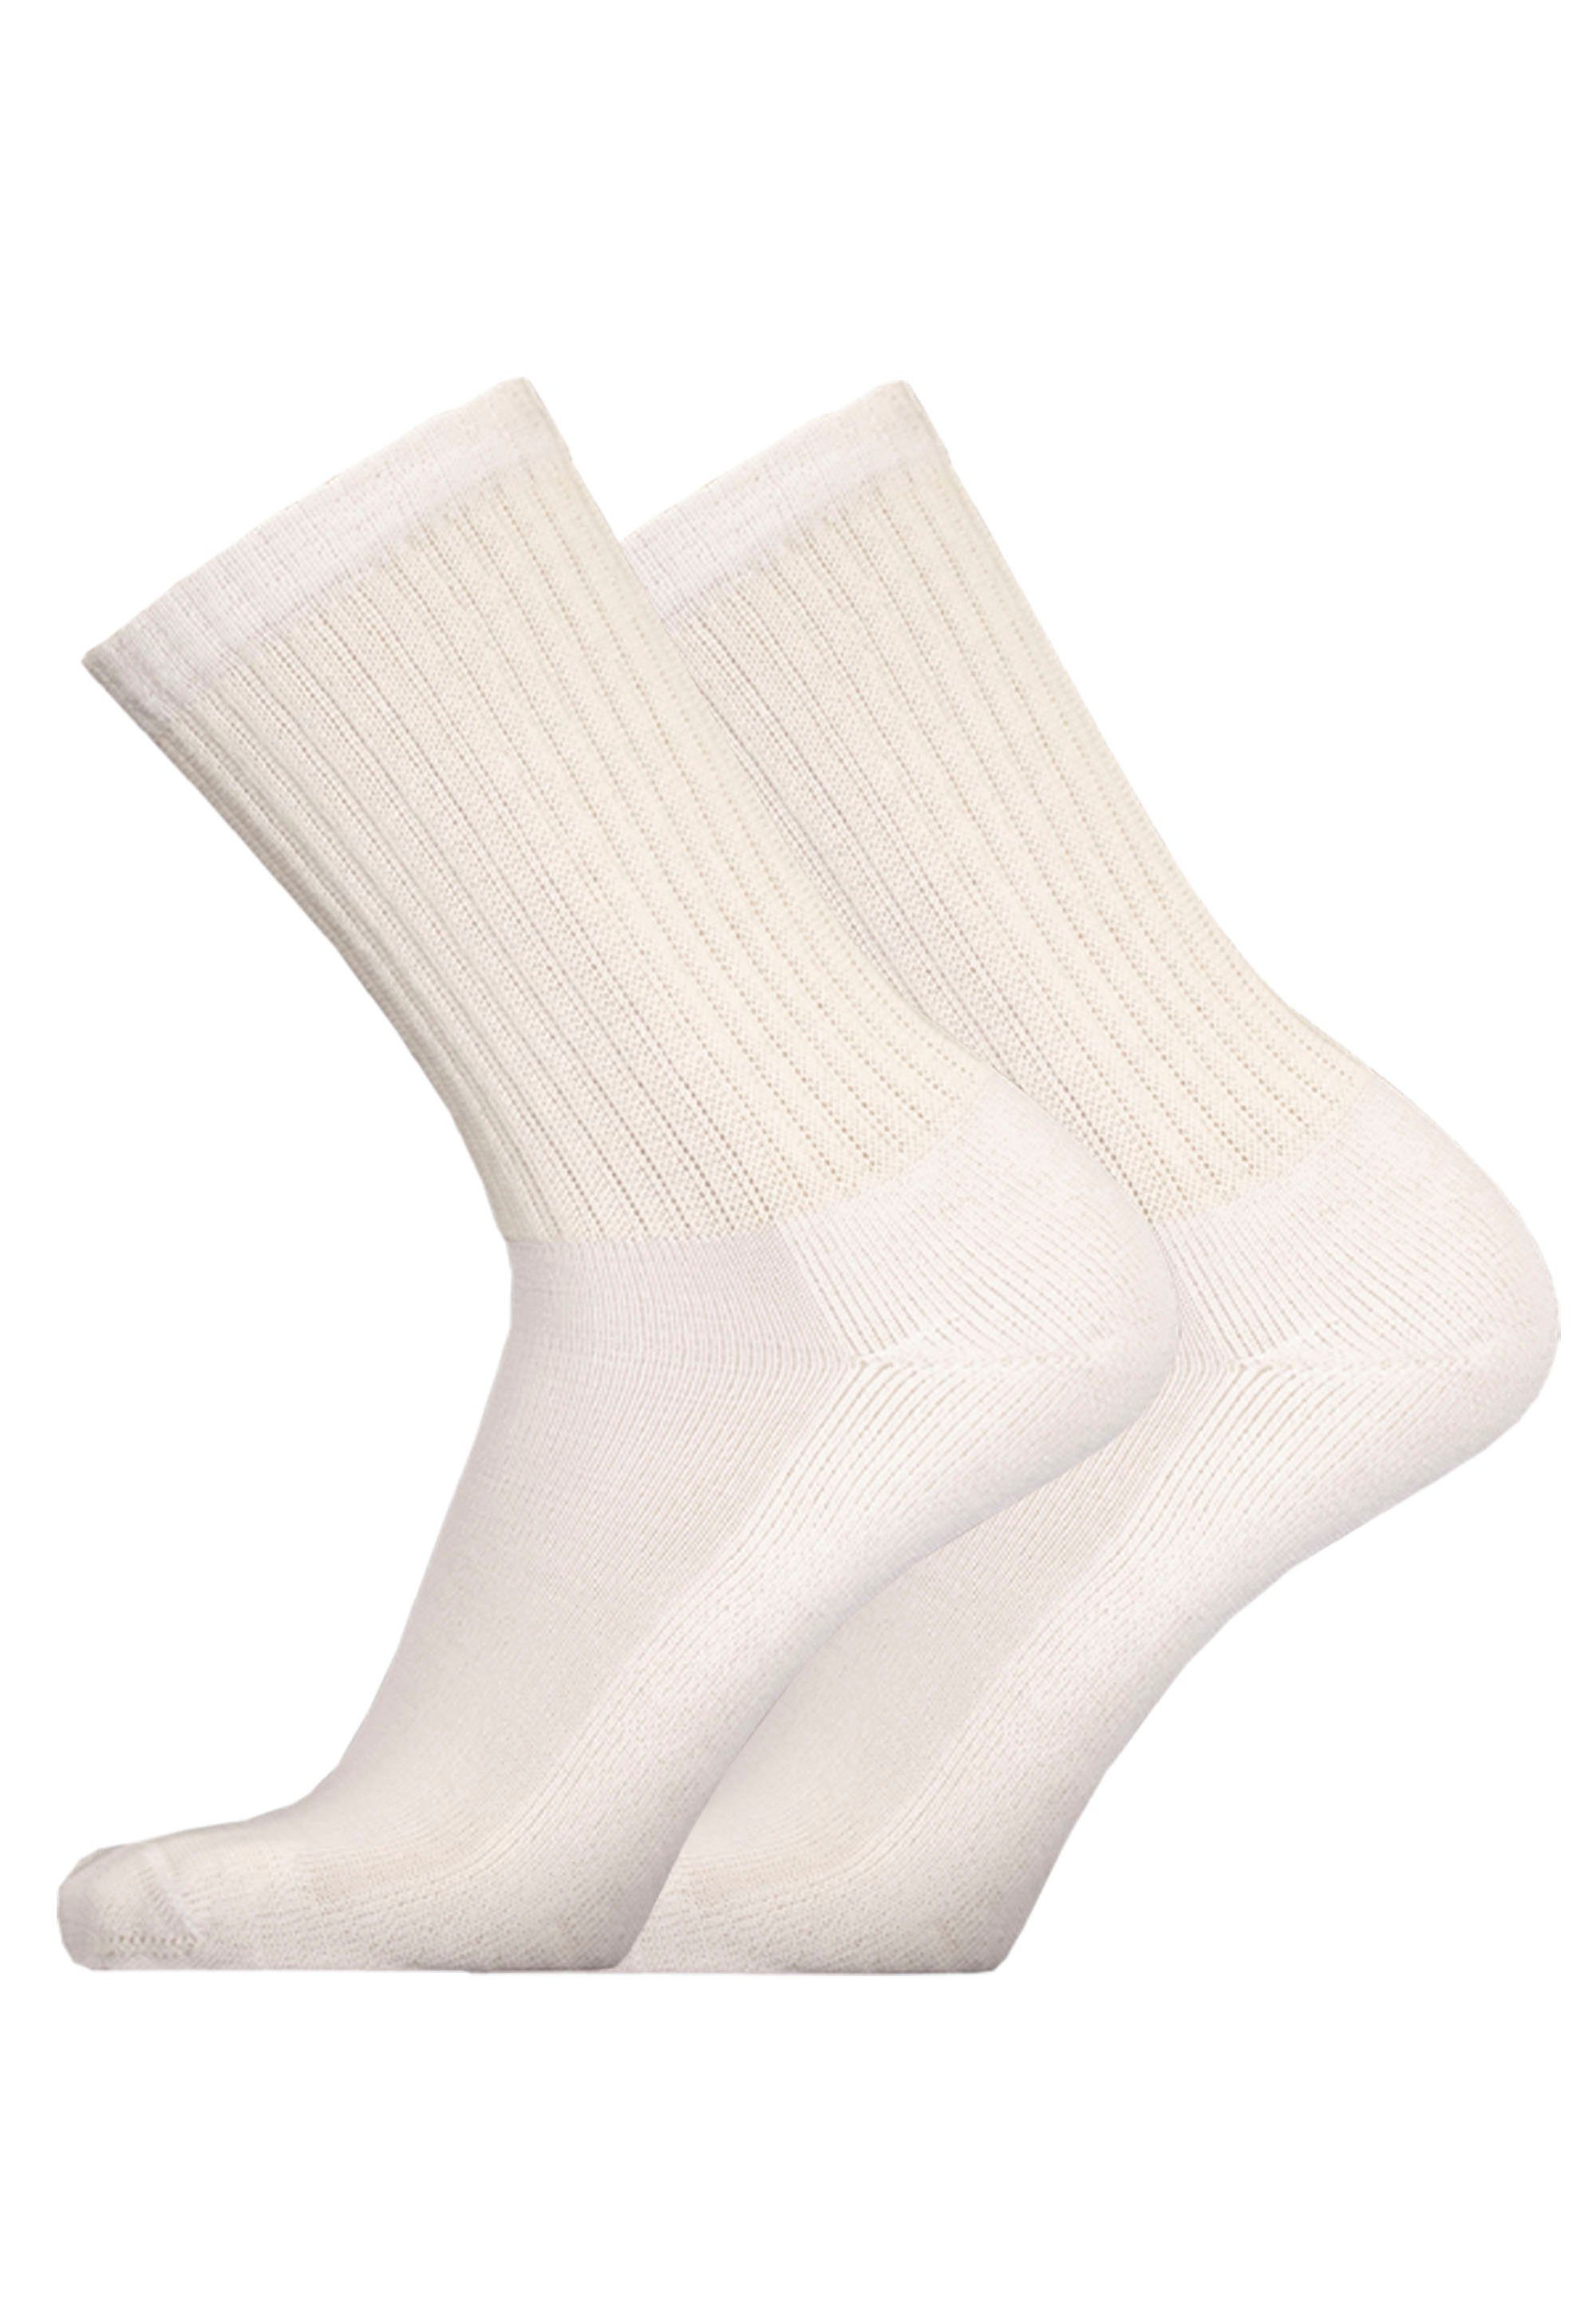 UphillSport Socken MERINO SPORT 2er Pack (2-Paar) in atmungsaktiver Qualität altweiß